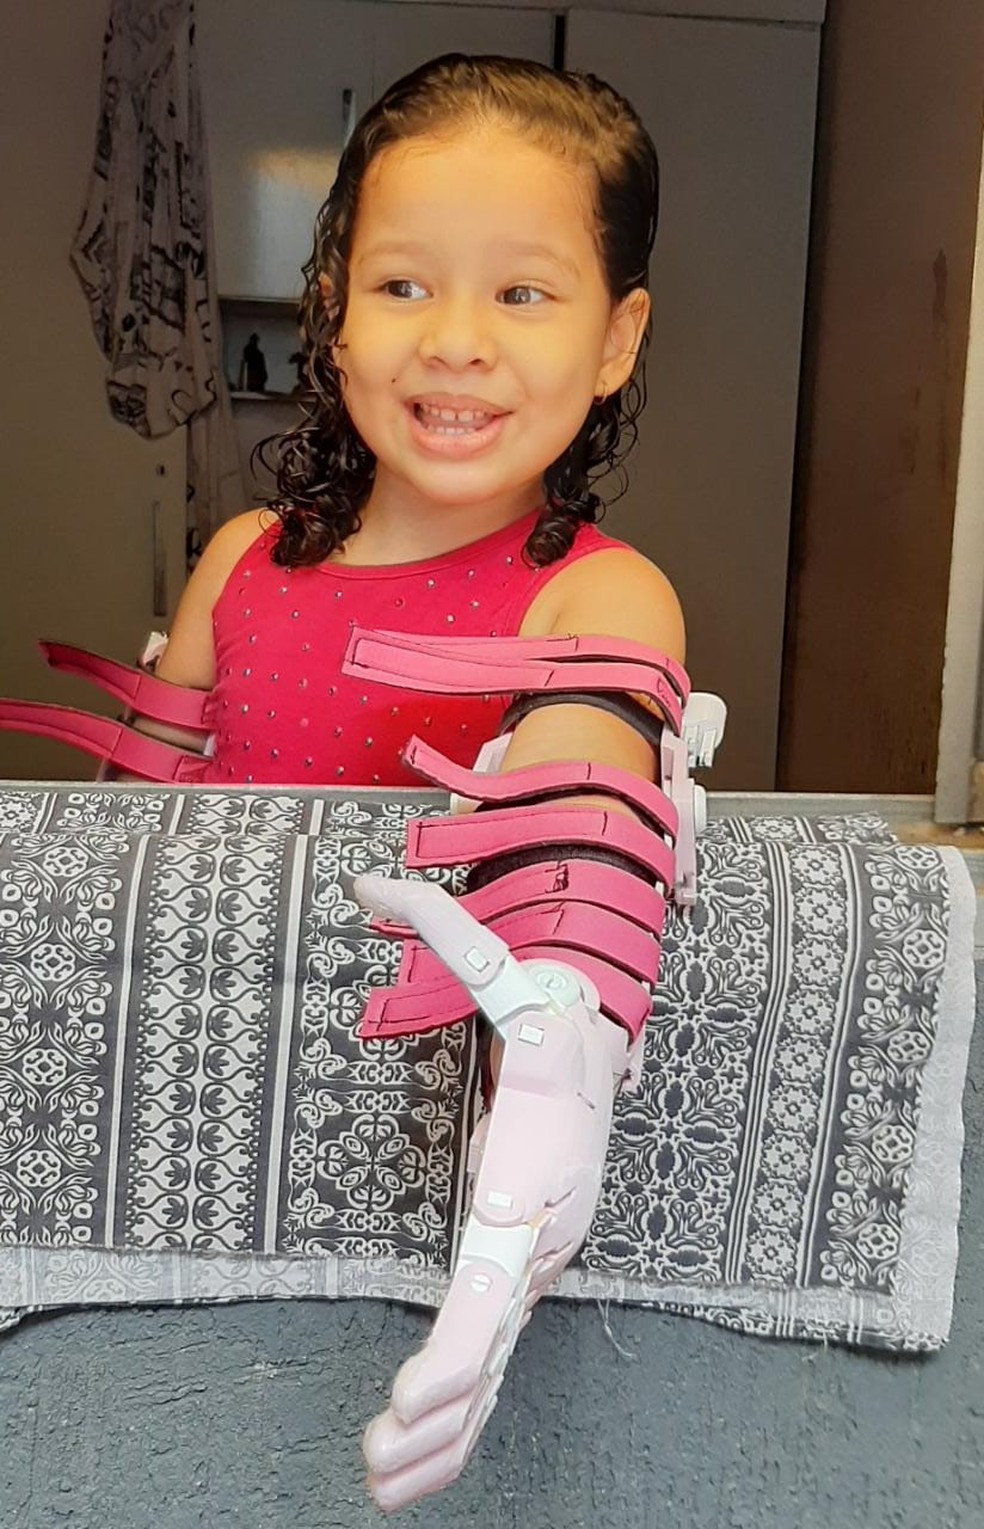 Maria Beattriz Santana da Costa, de 4 anos, recebe prótese de mãos feita em impressora 3D — Foto: Arquivo pessoal